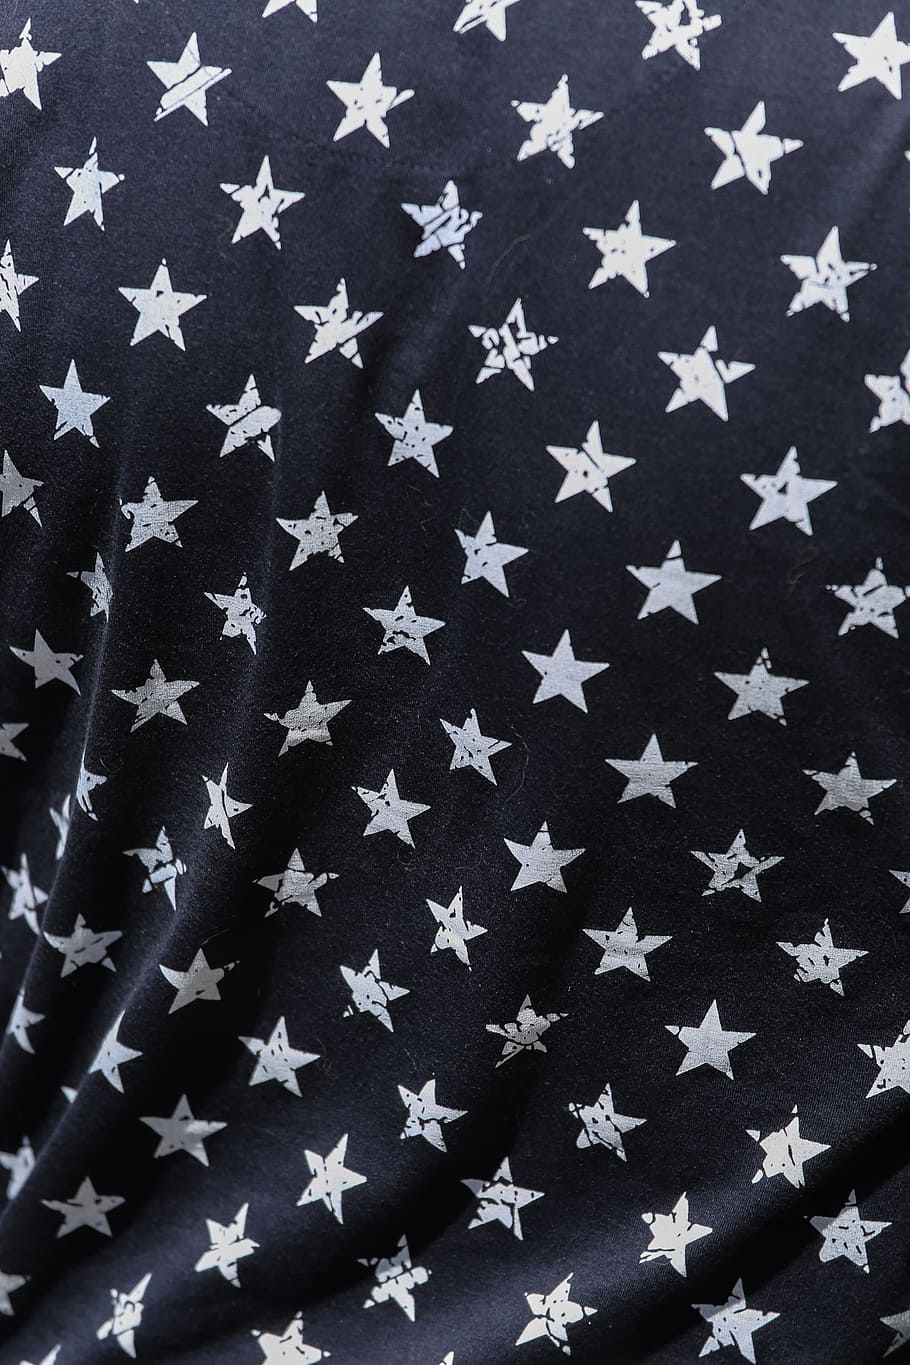 синий, ткань, белый, звезды, напечатанный, 4 июля, американский флаг, праздник, одежда, ковбой